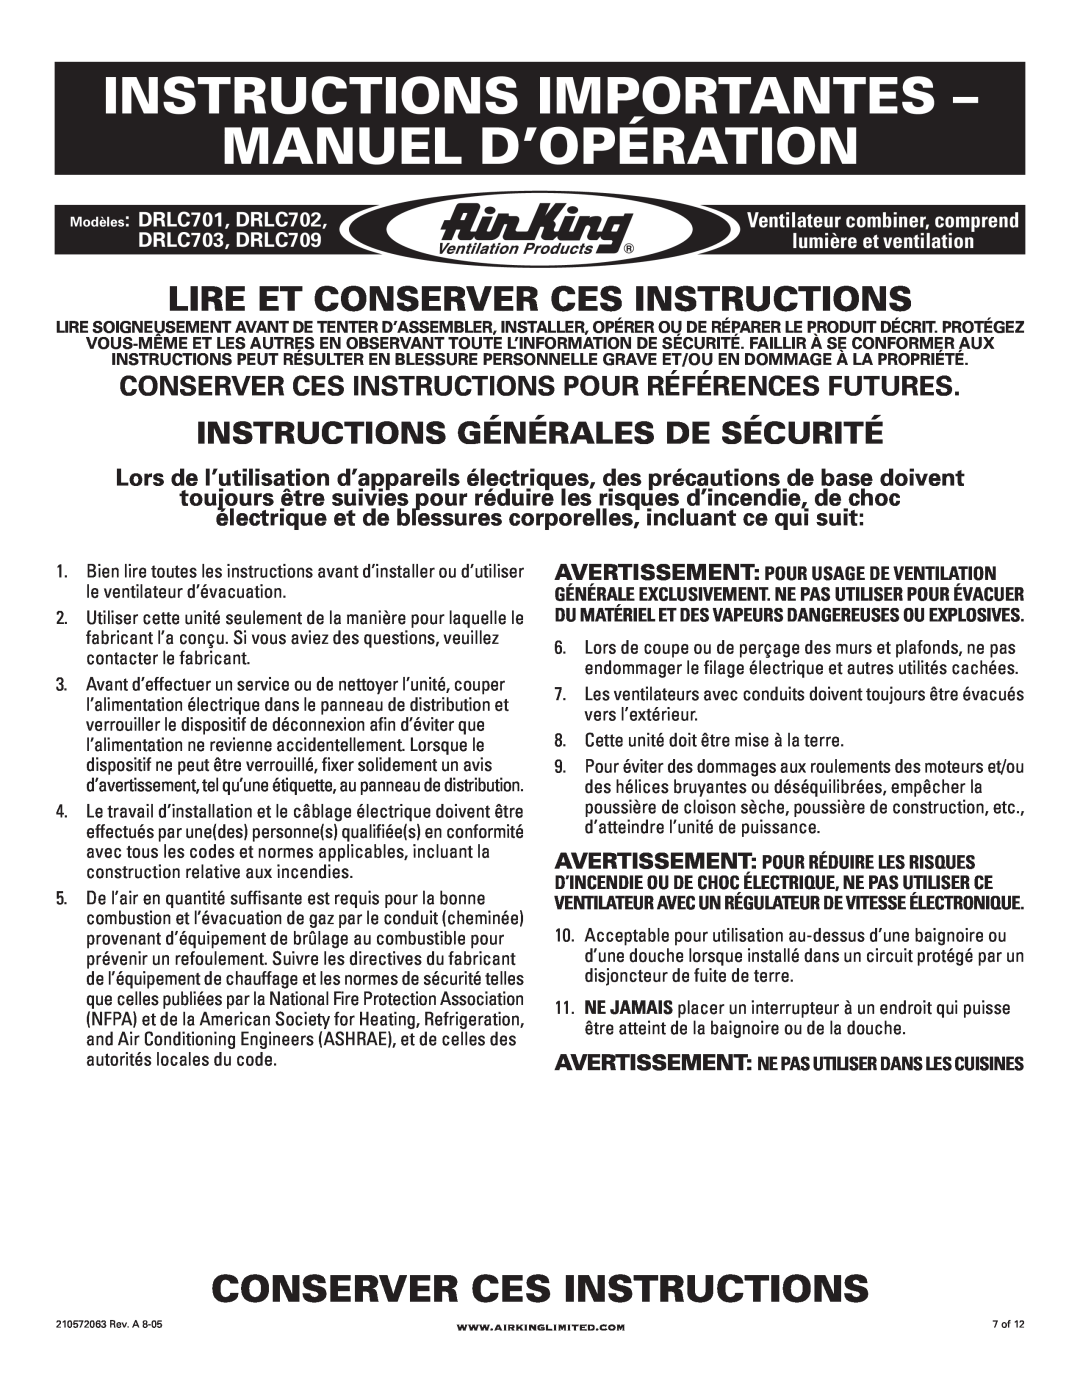 Air King DRLC709 manual Instructions Importantes Manuel D’Opération, Conserver Ces Instructions, Modèles DRLC701, DRLC702 